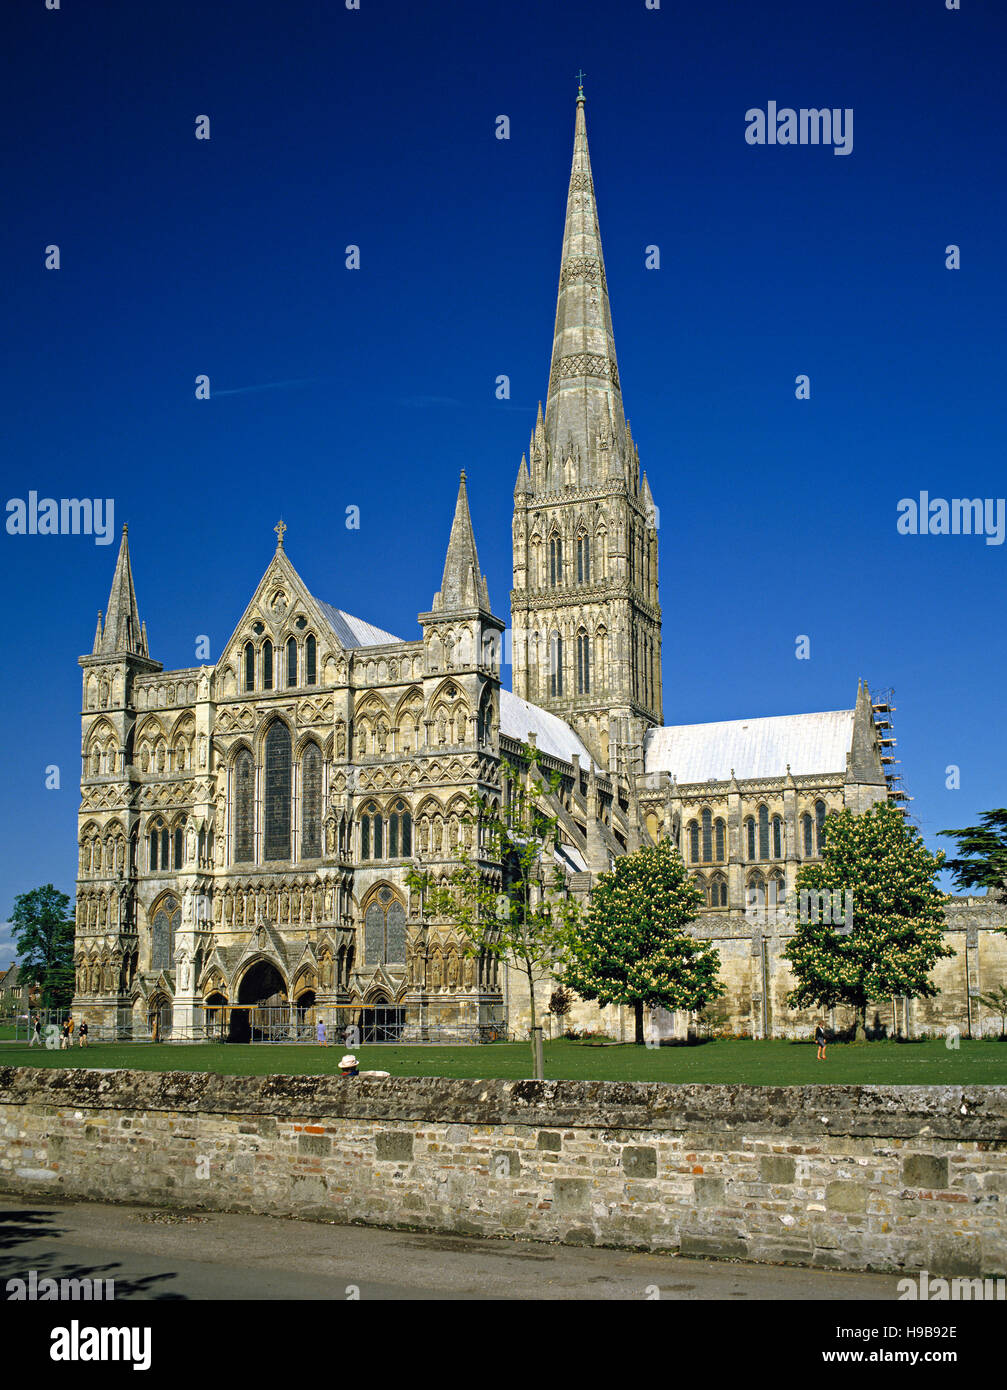 La cathédrale de Salisbury, Wiltshire, Angleterre, Royaume-Uni, Europe Banque D'Images